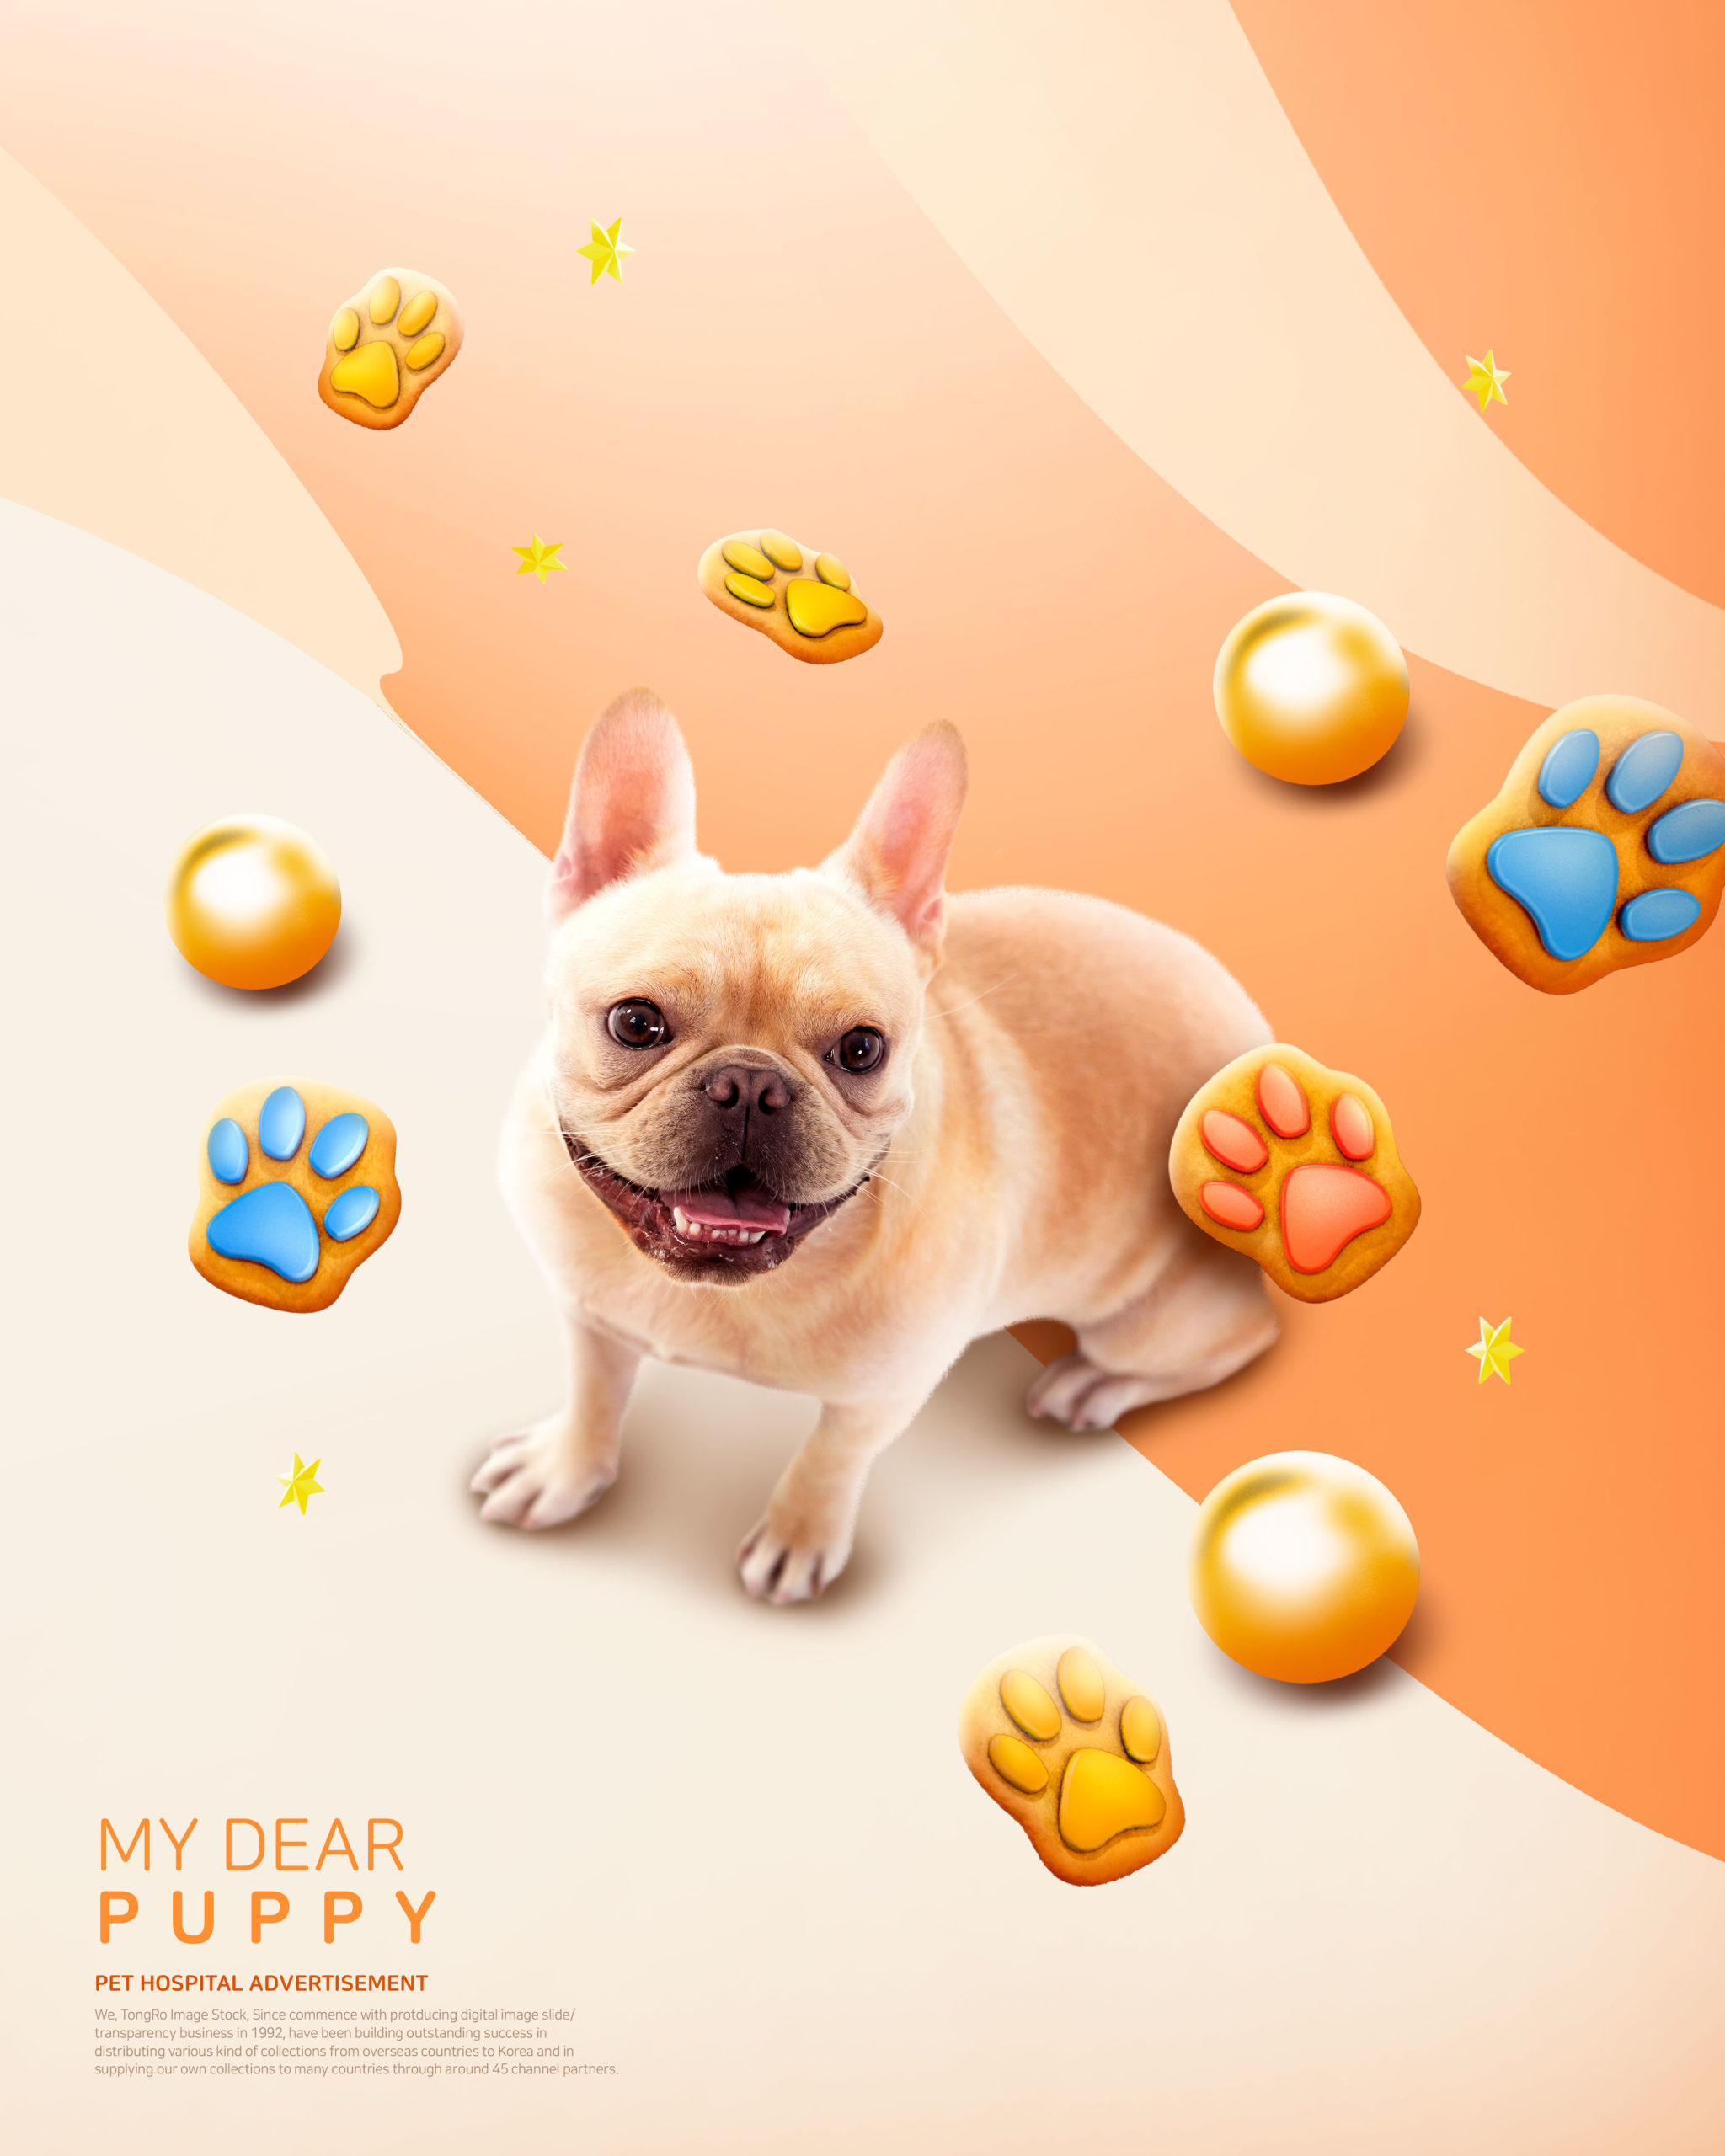 创意可爱的小狗宠物医院广告海报模板套装插图